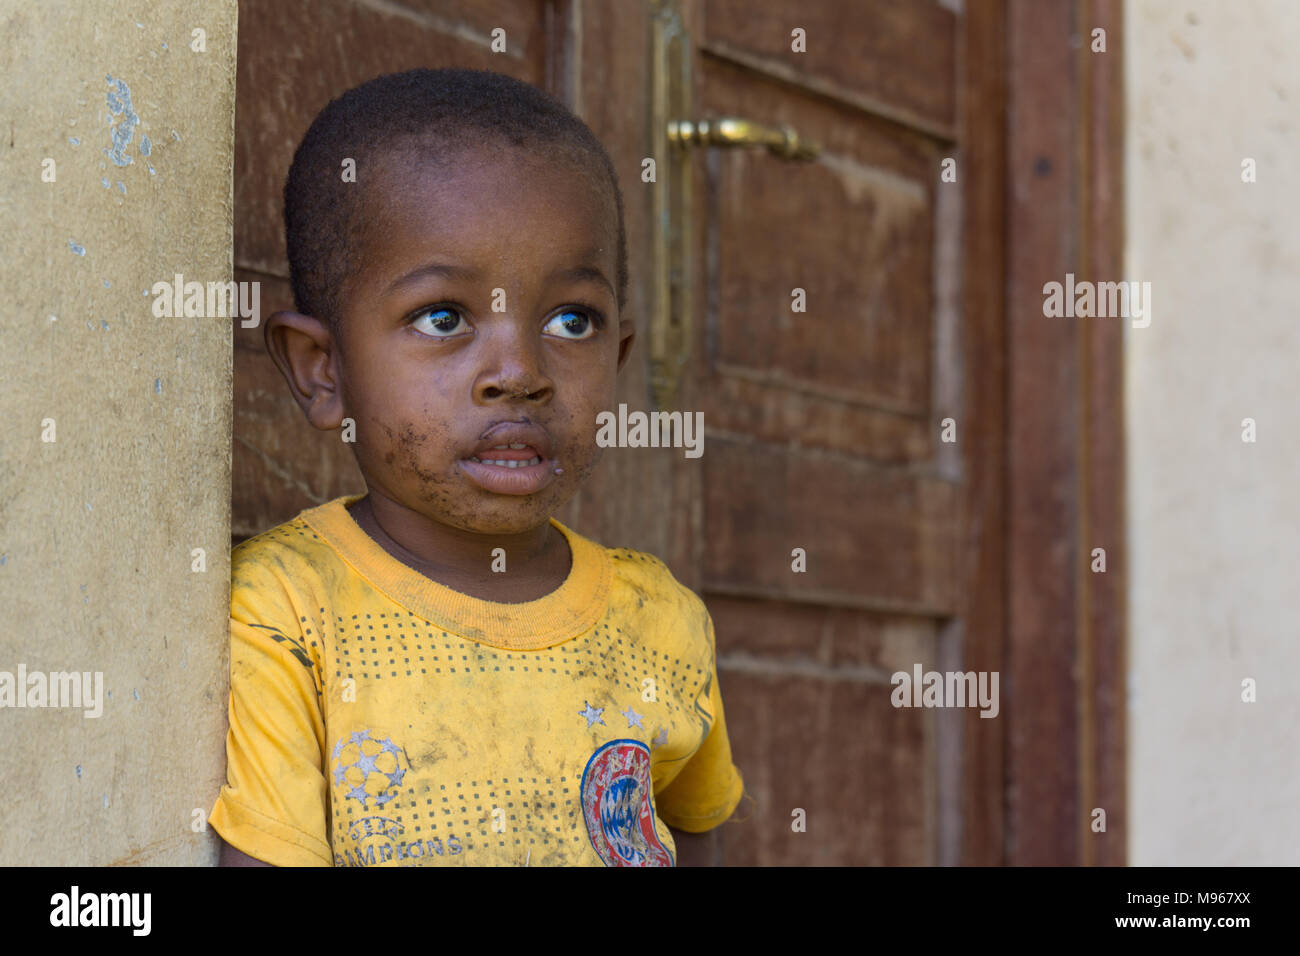 Jeune garçon africain à Zanzibar, Tanzanie, Afrique de l'Est. Banque D'Images